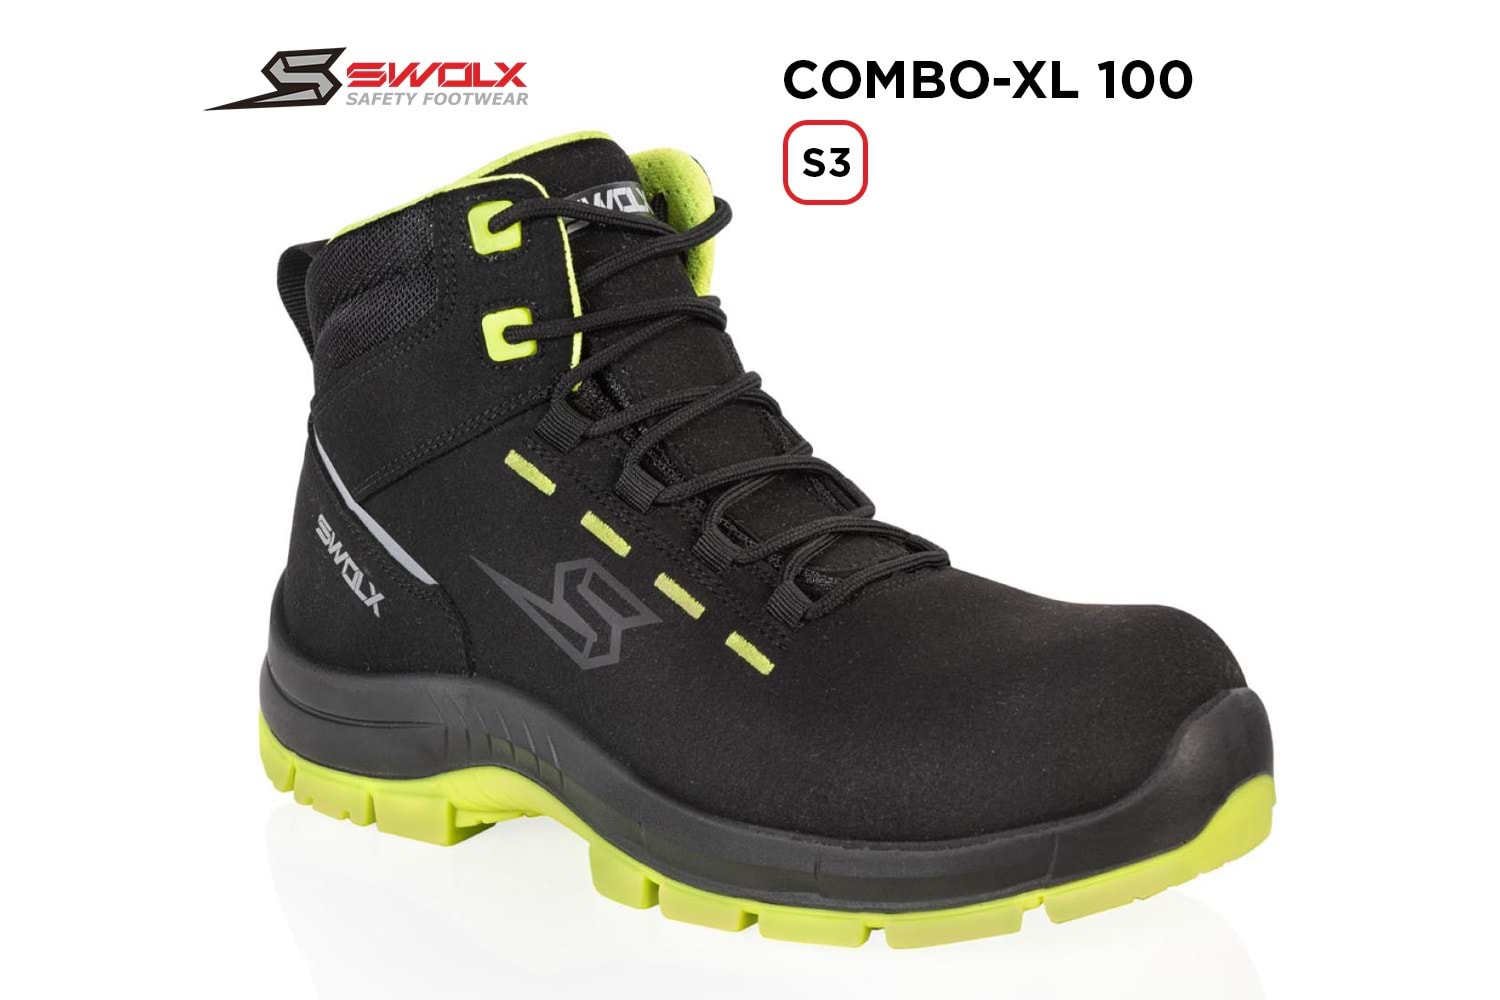 Swolx İş Ayakkabısı - Combo-Xl 100 S3 - 43